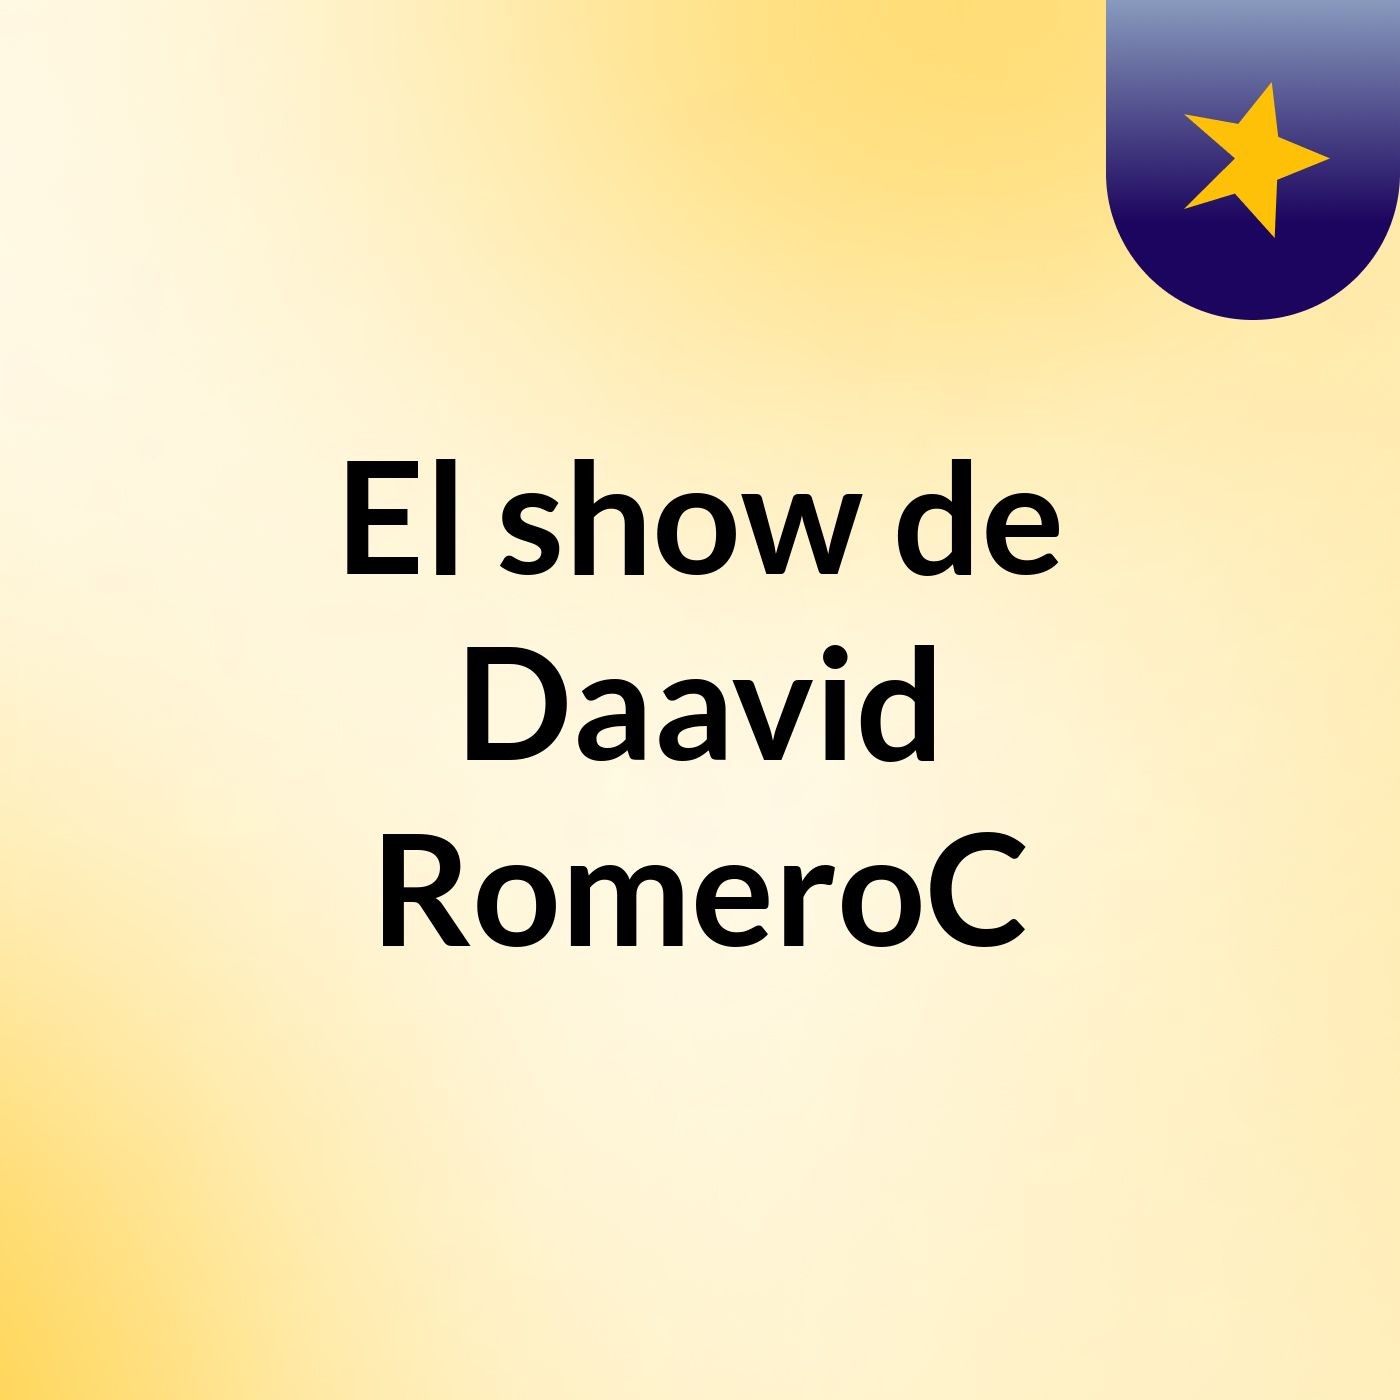 El show de Daavid RomeroC